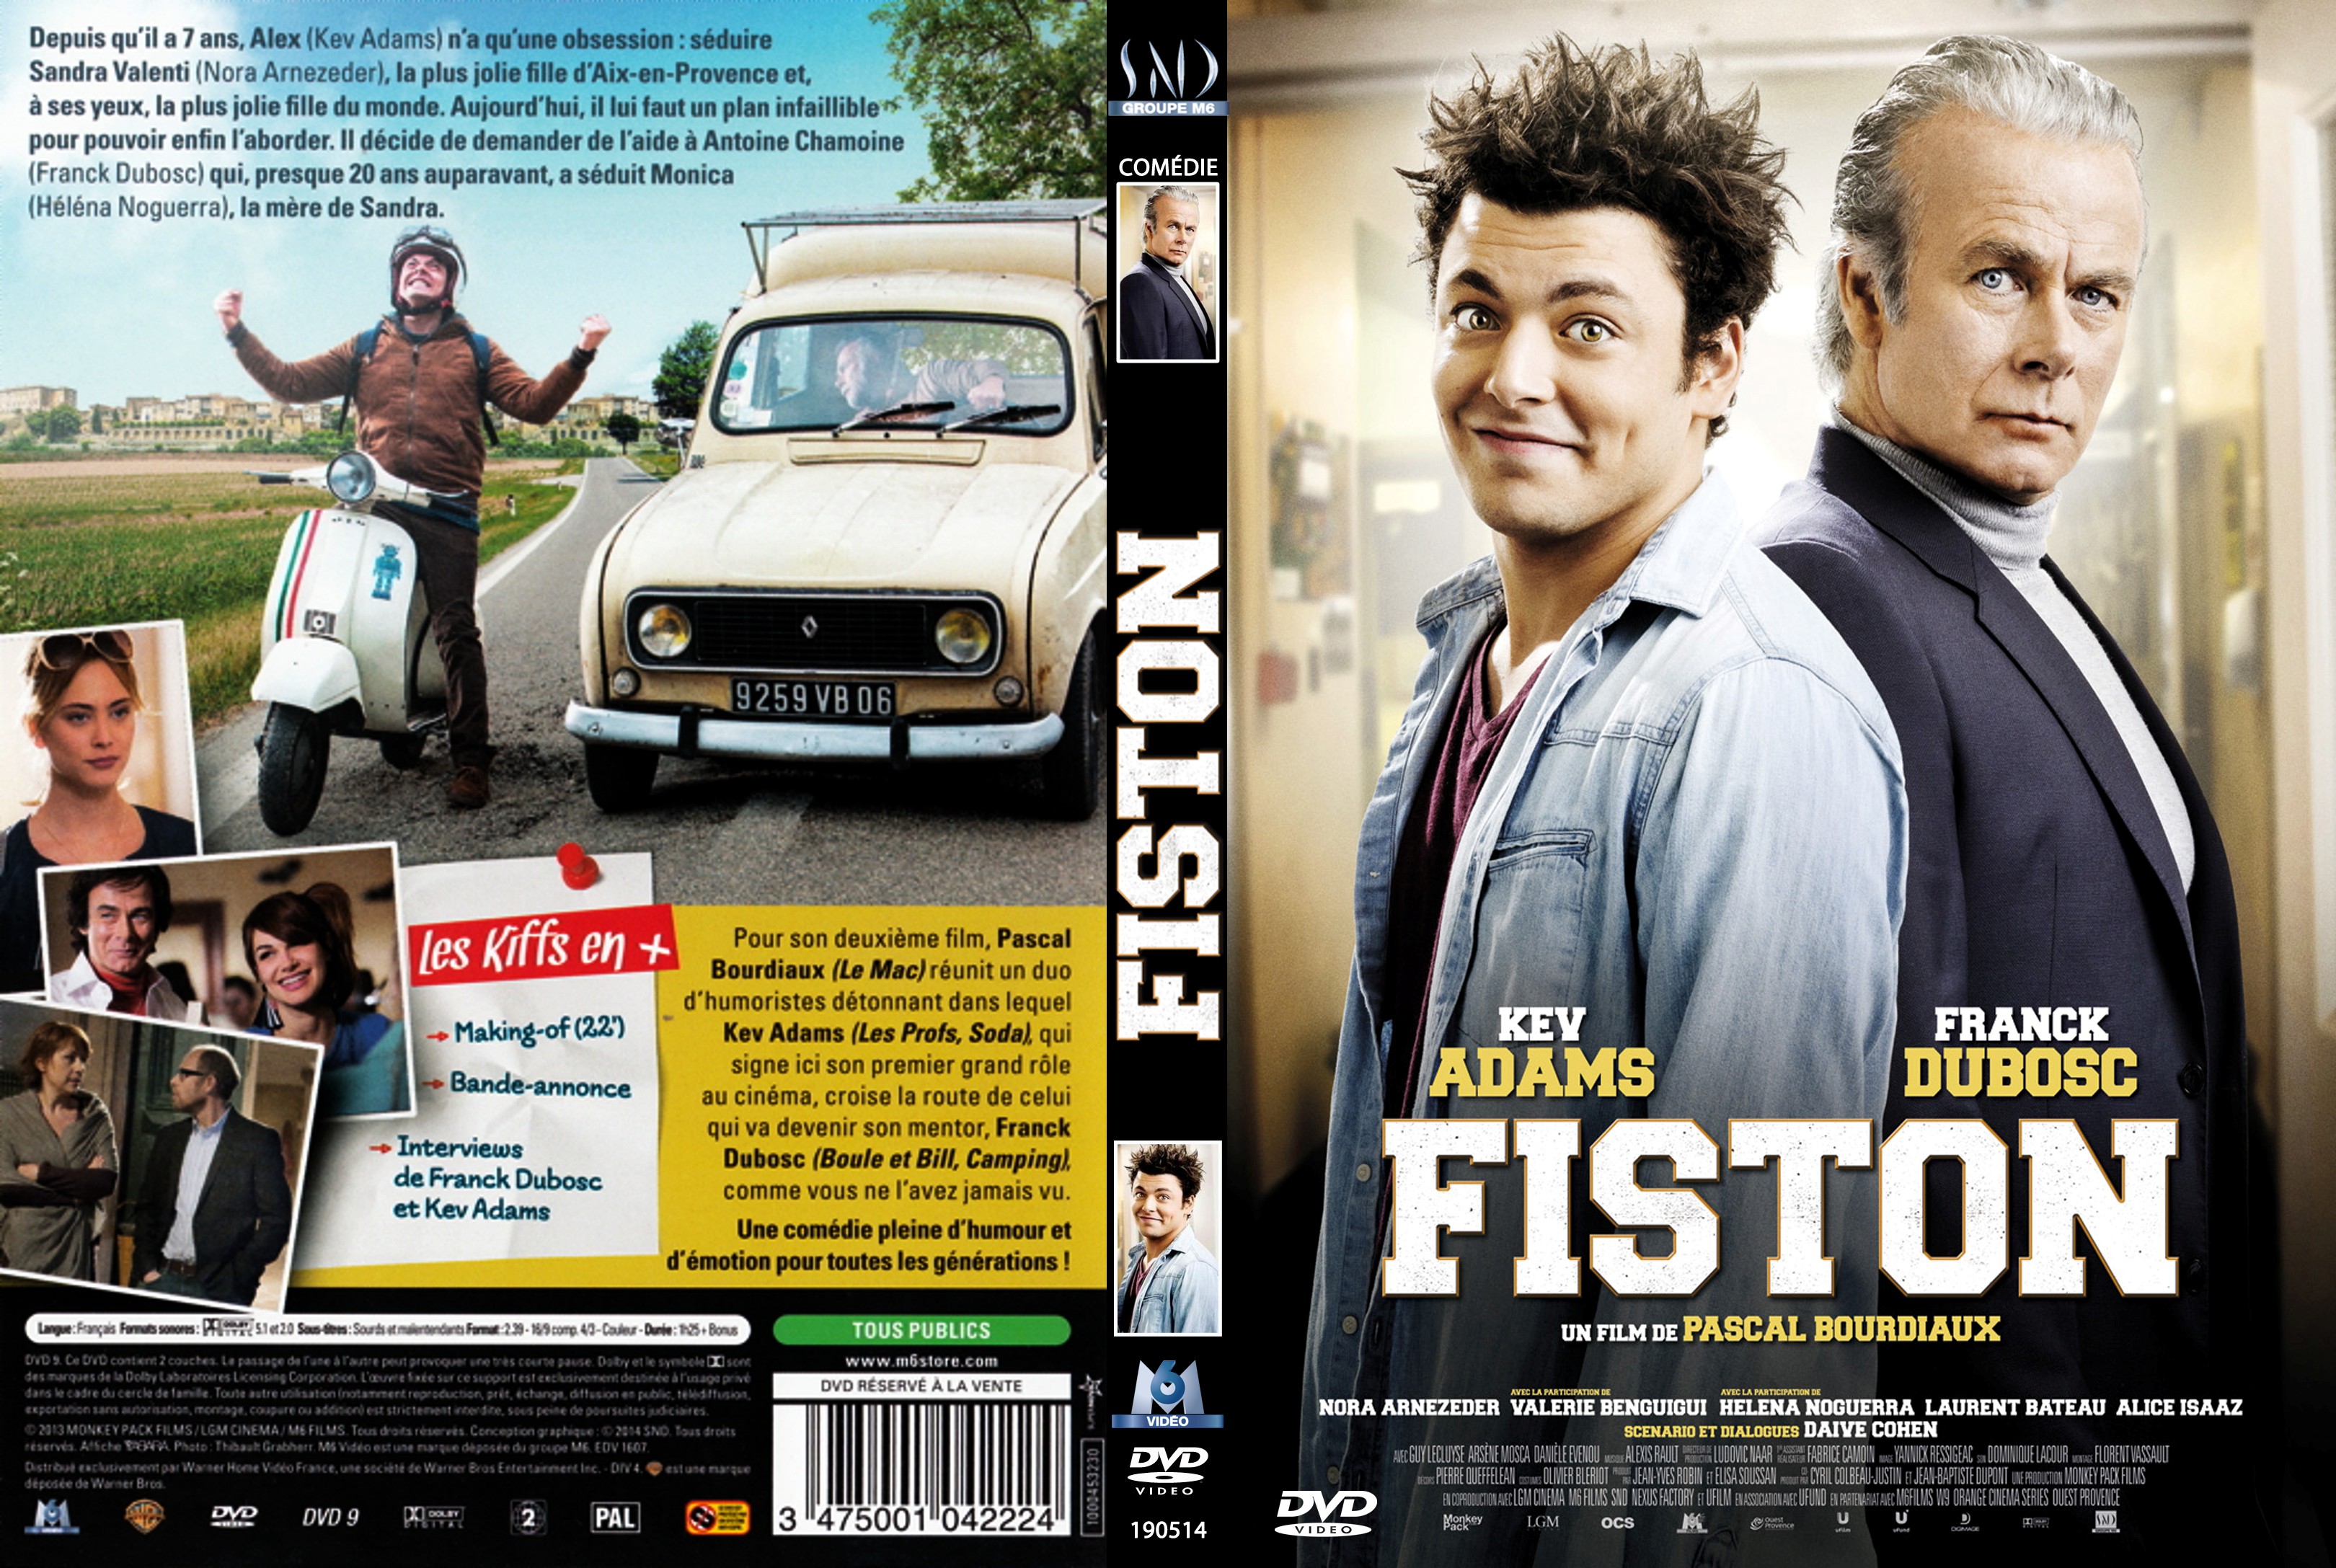 Jaquette DVD Fiston custom v2